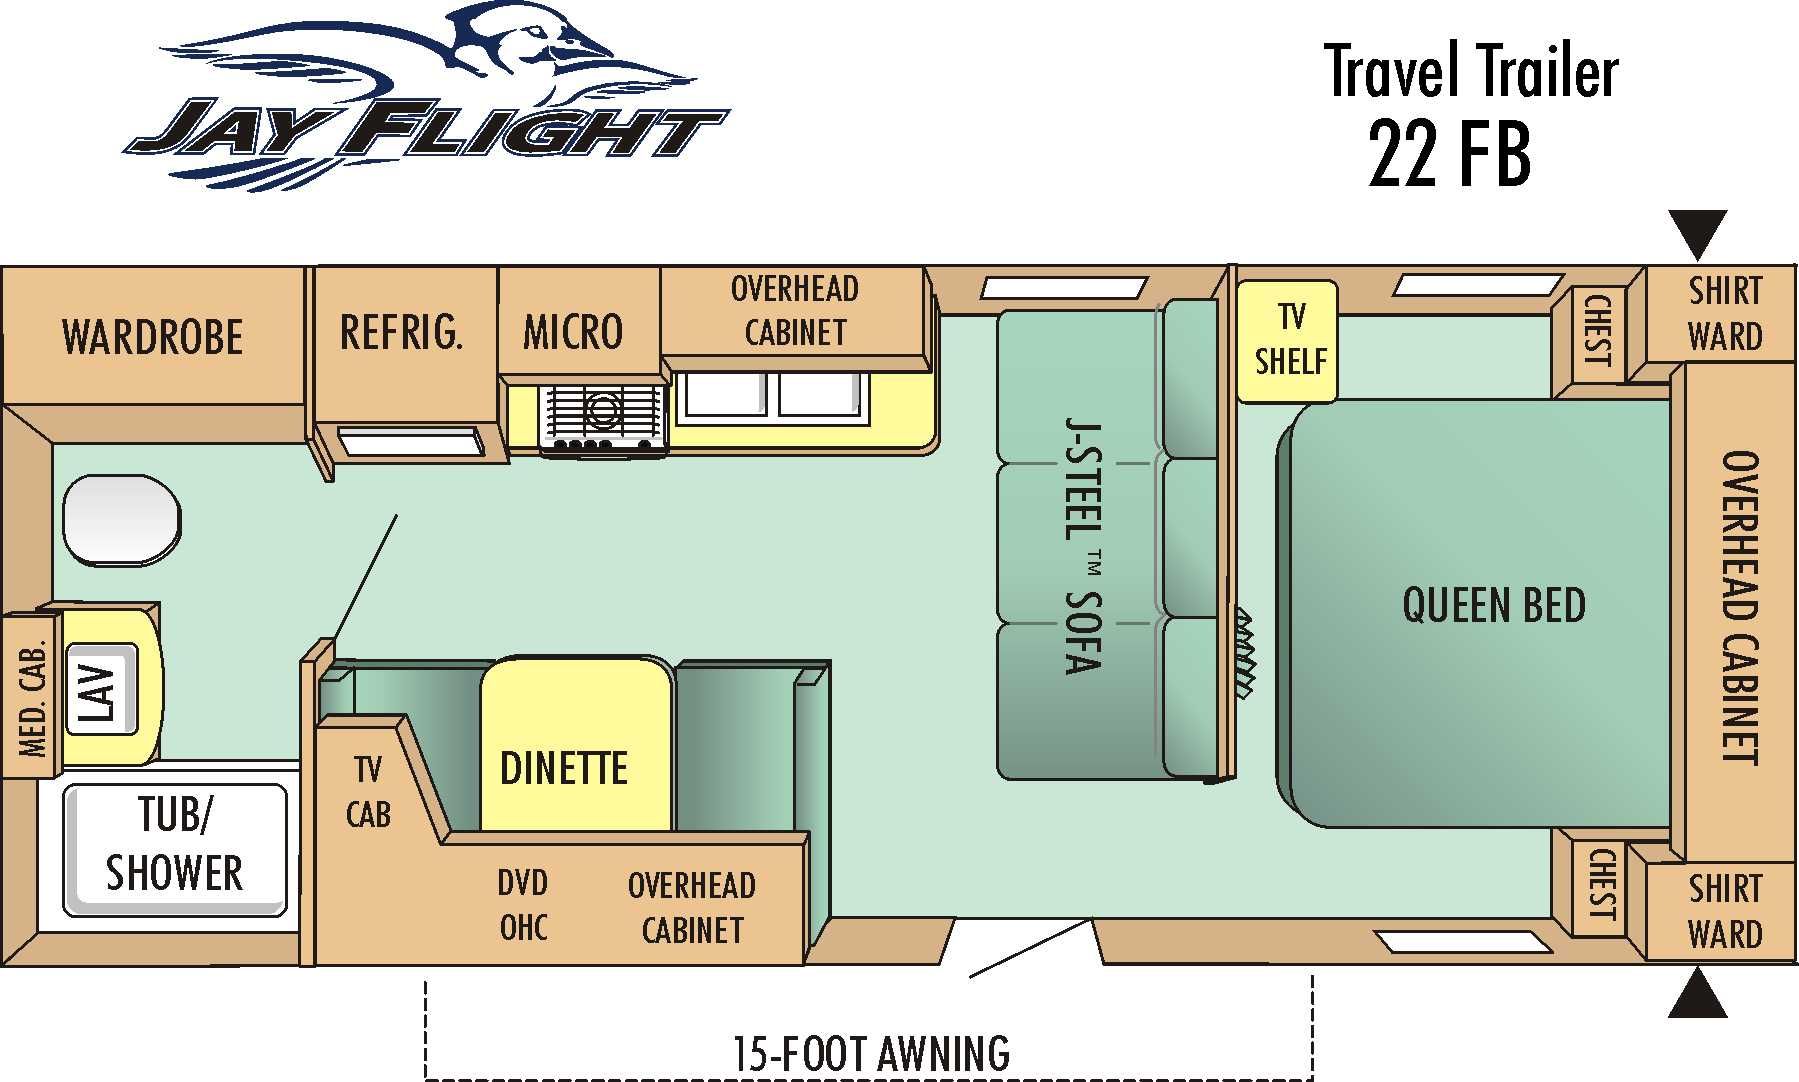 Travel trailer floor plans, Travel trailer, Floor plans